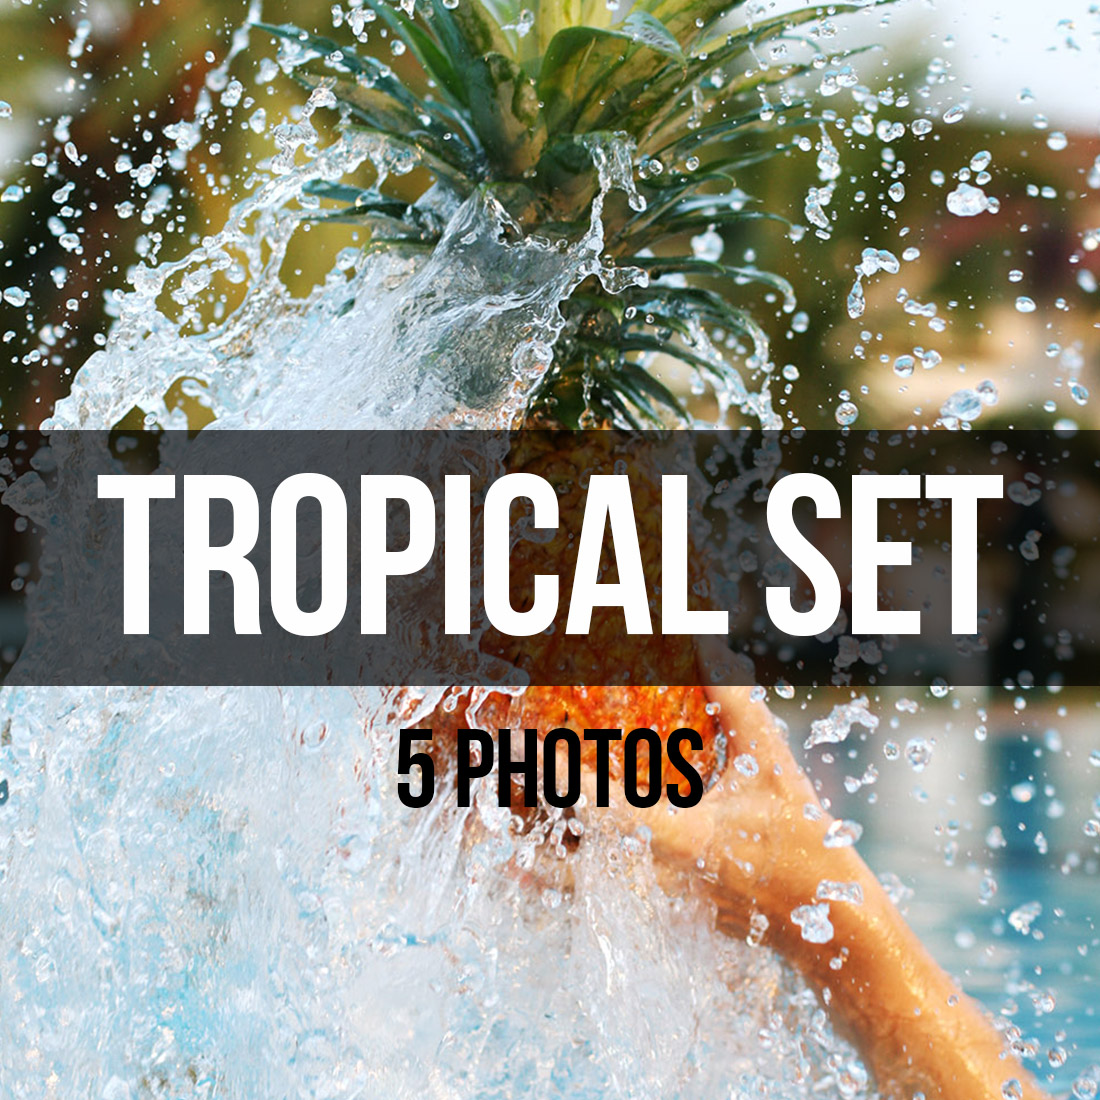 Tropical Set 5 Photos presentation.